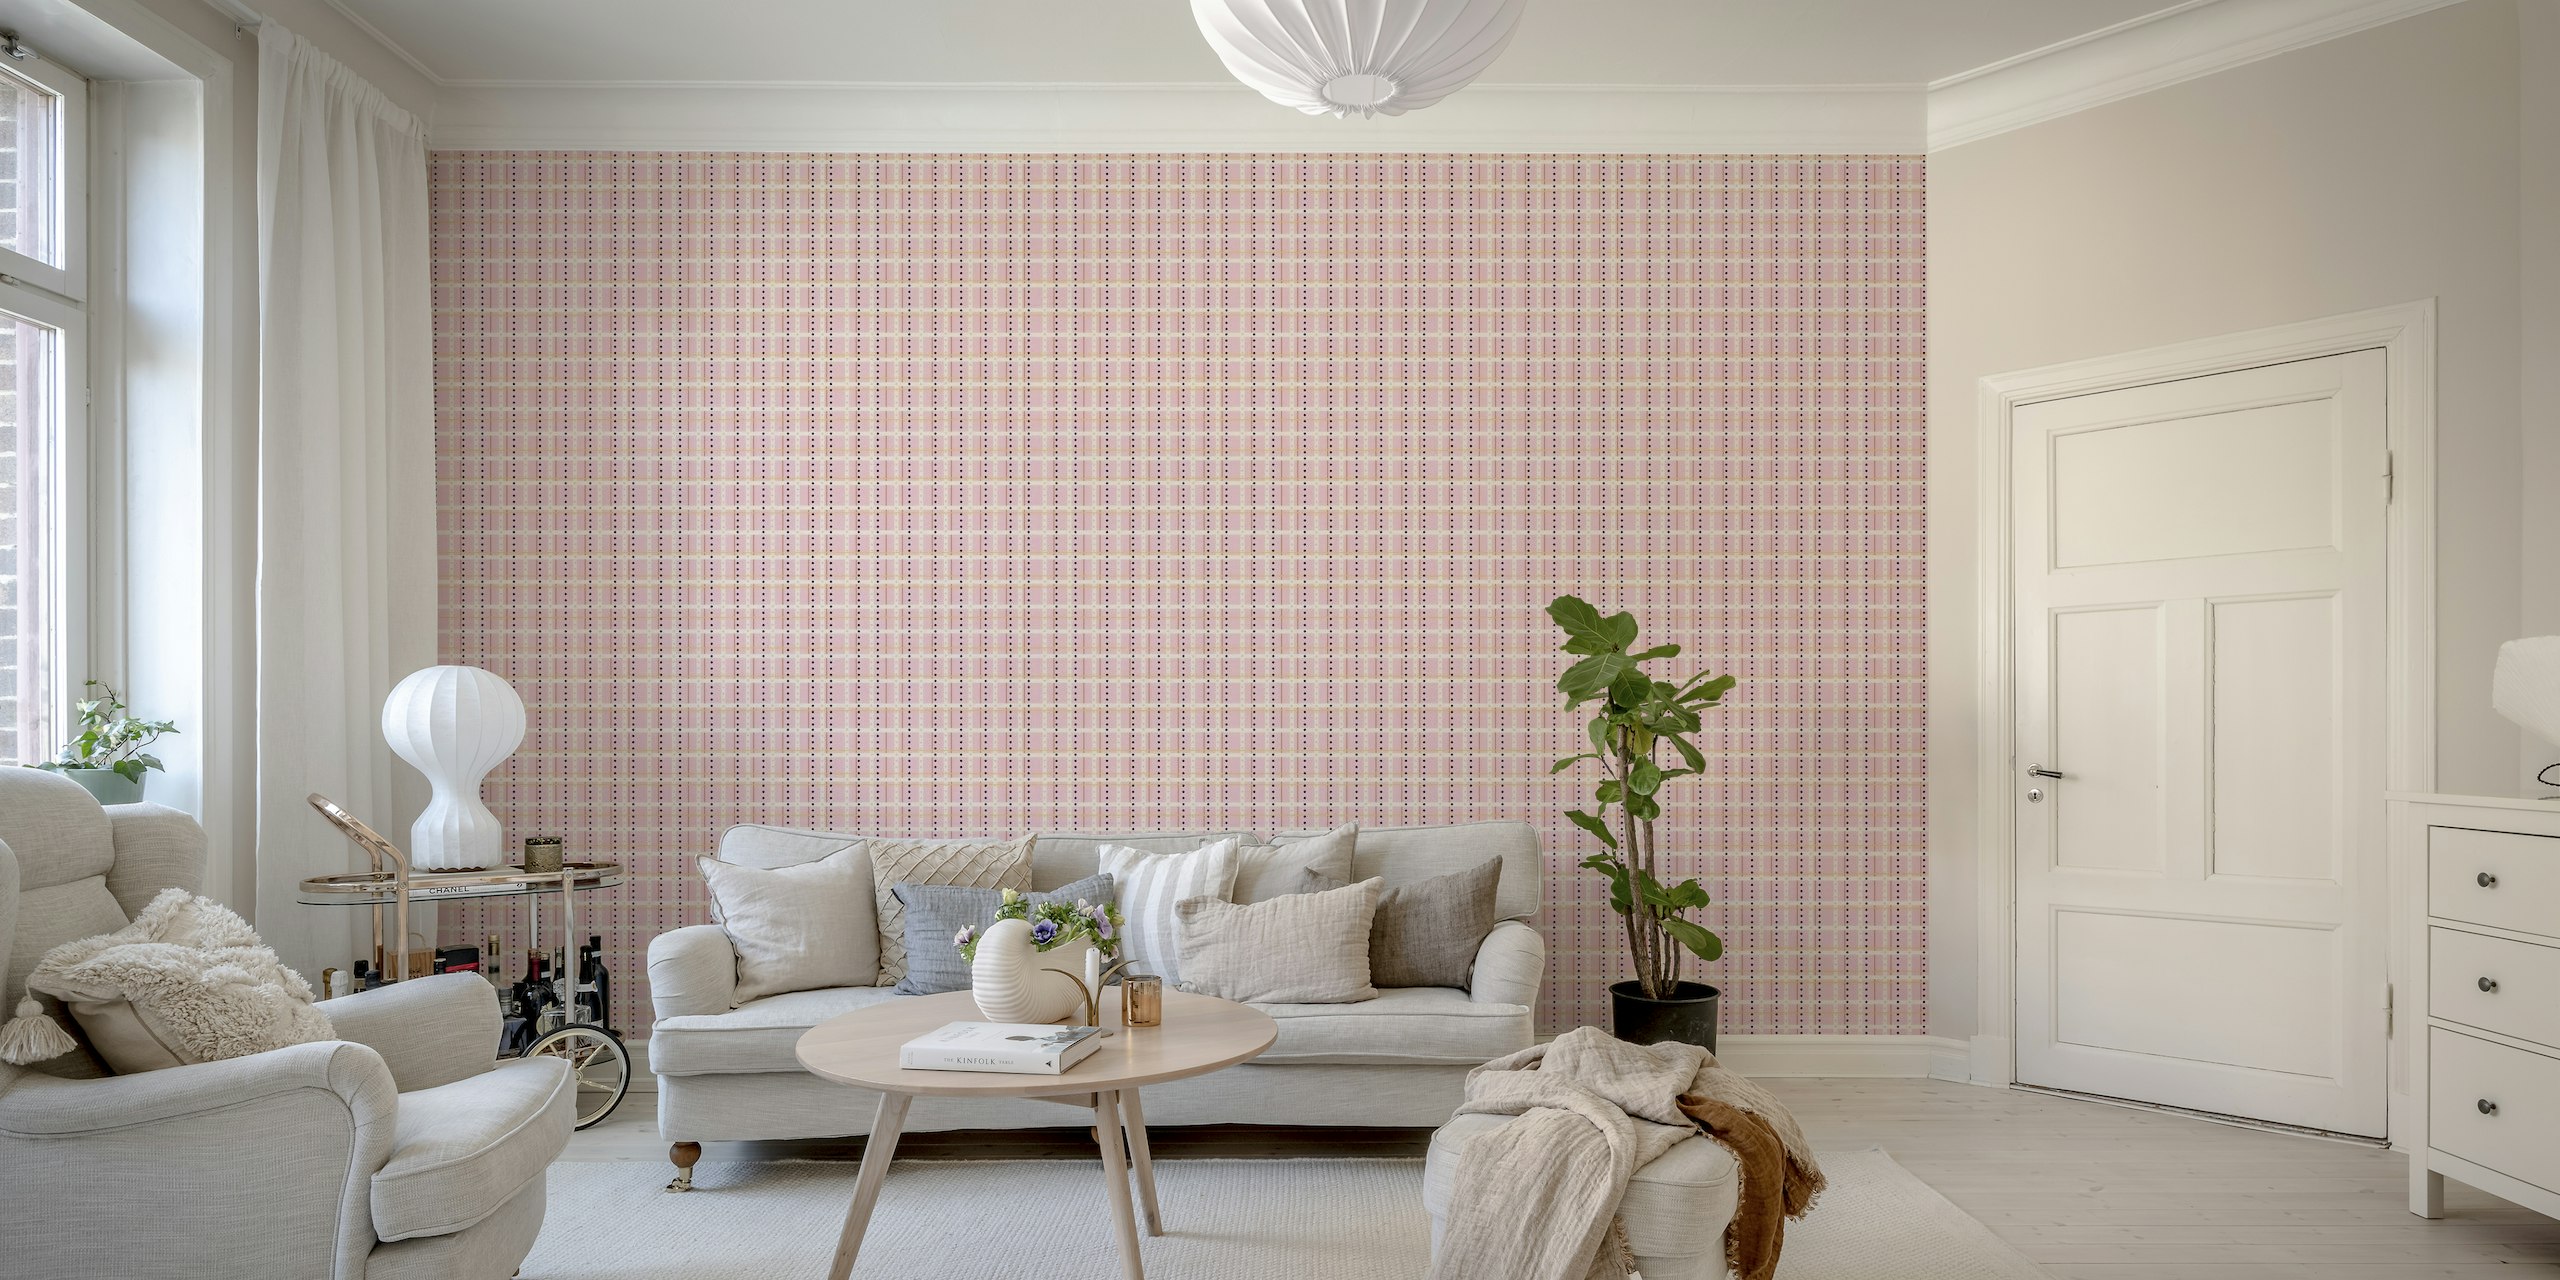 French Dotted Checks Roze behangmural met een subtiel en elegant patroon